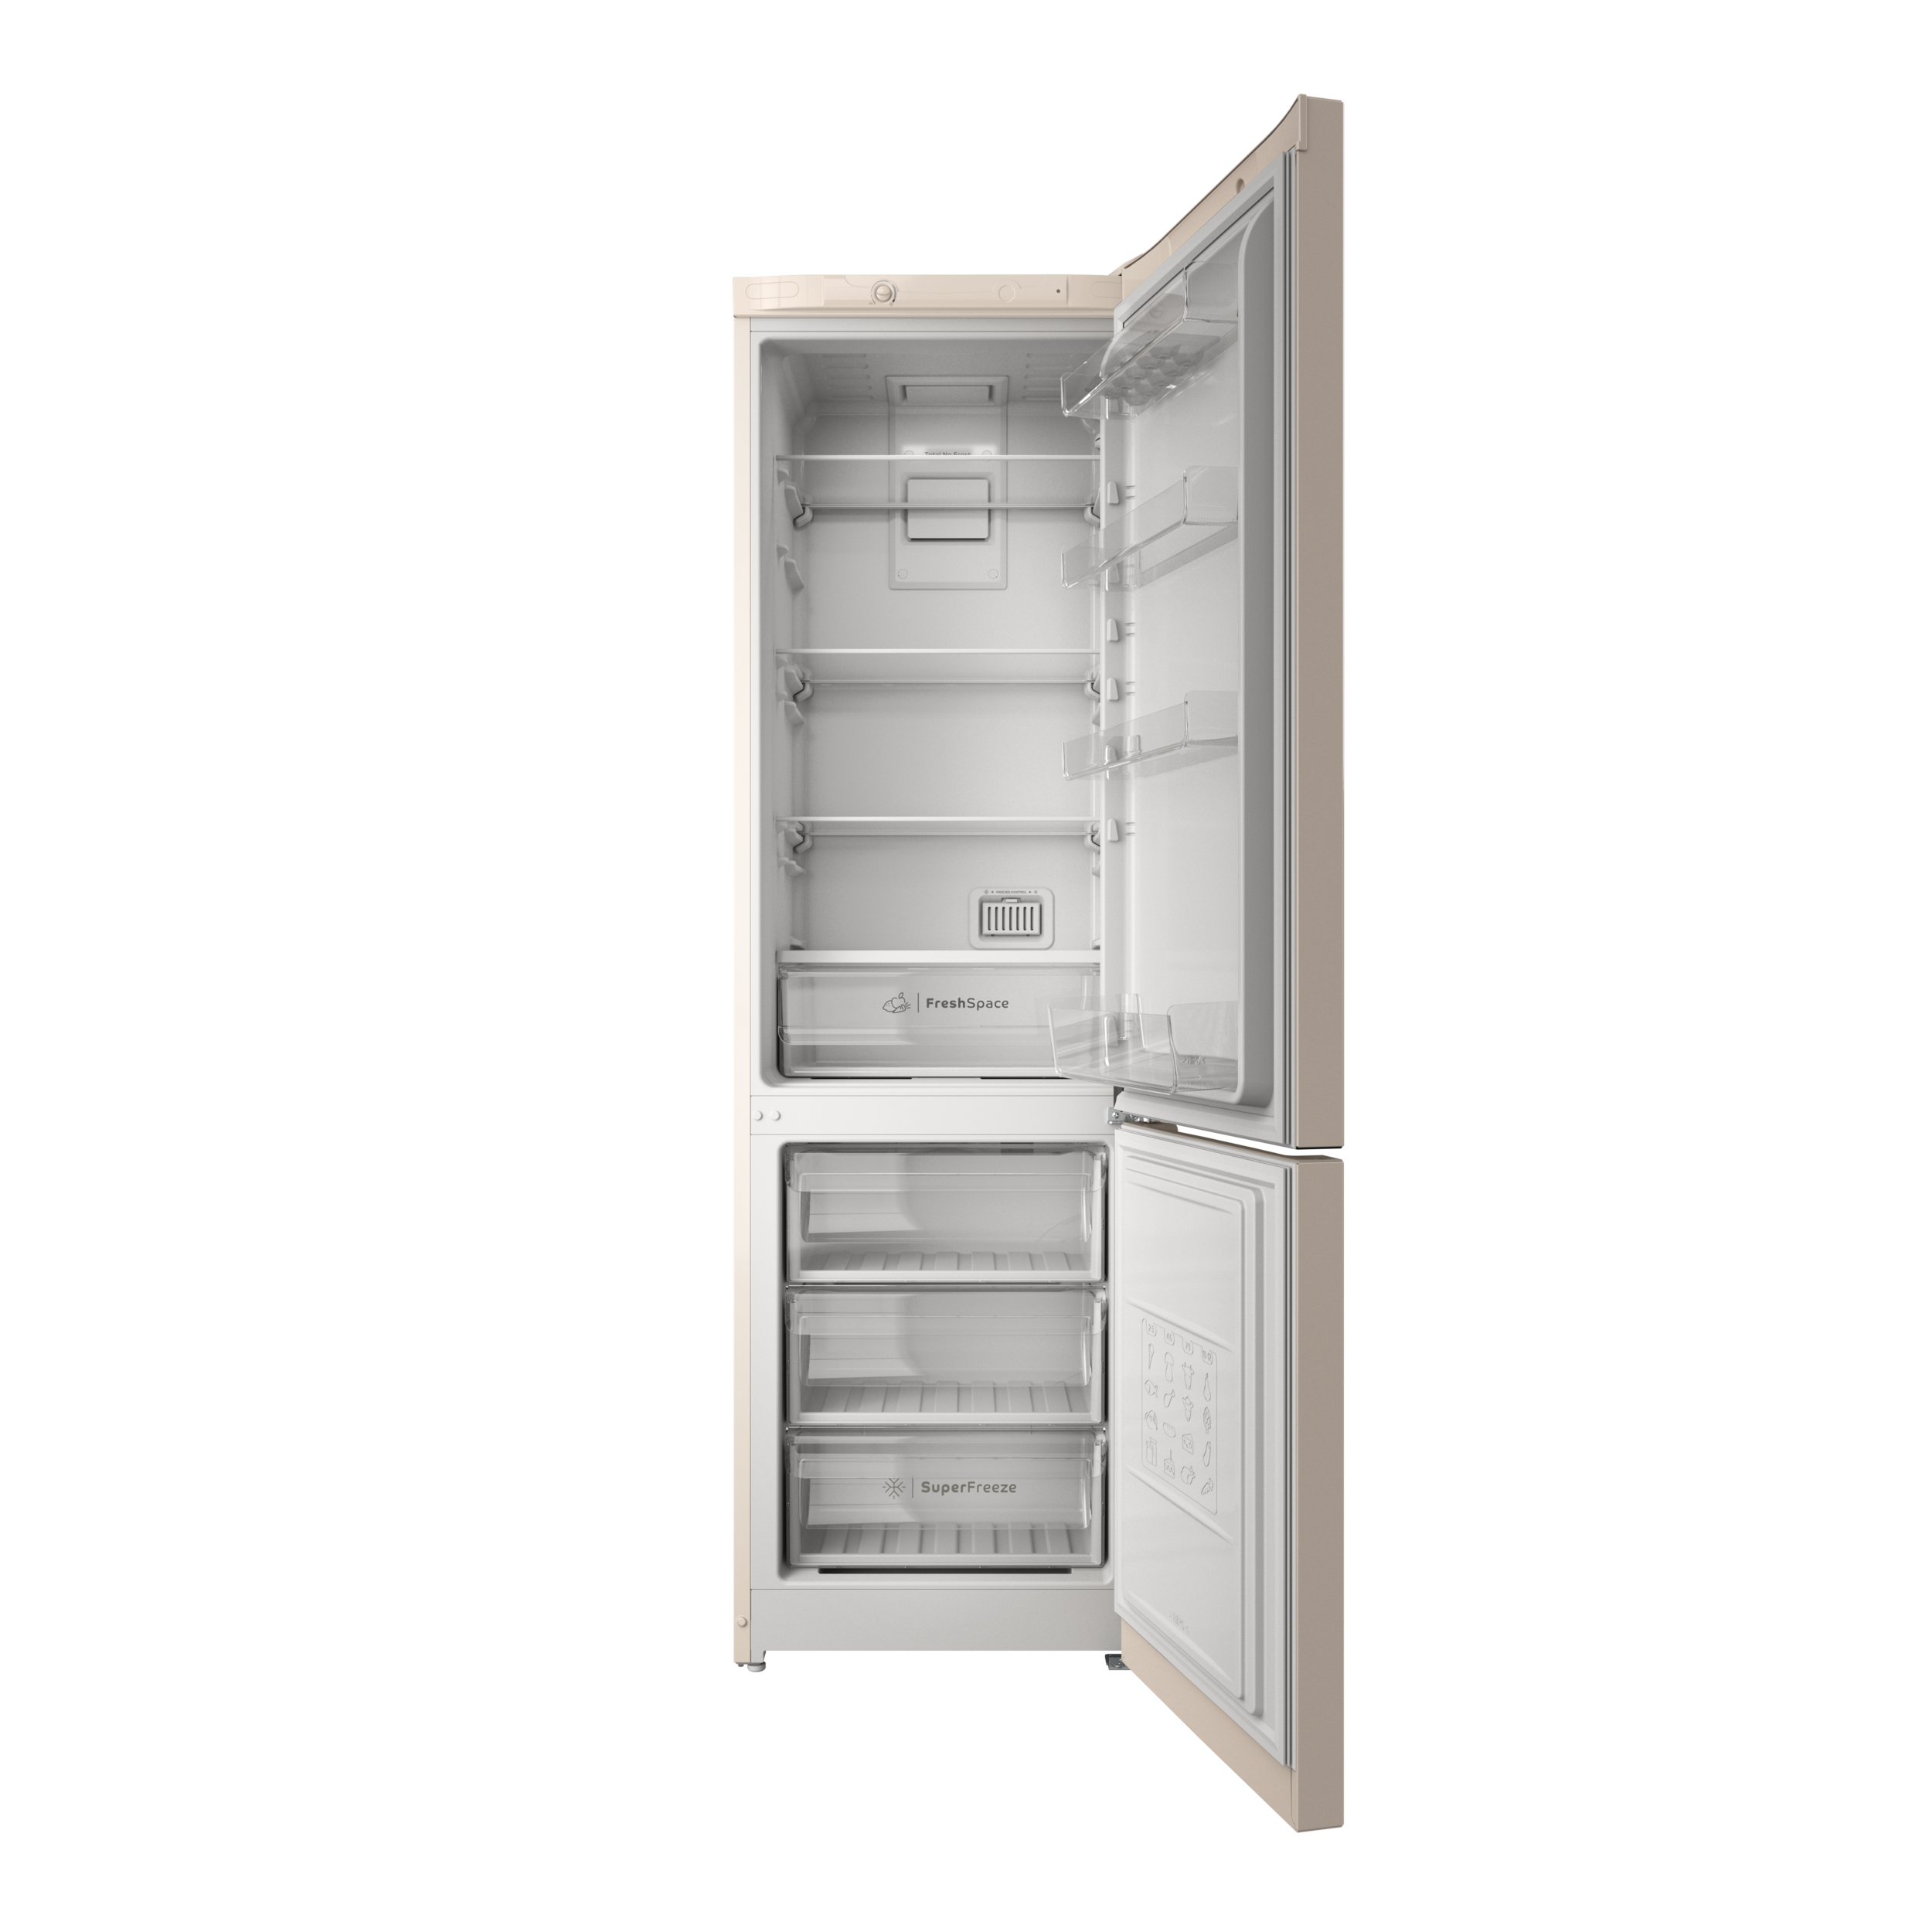 Холодильник с нижней морозильной камерой Indesit ITS 4200 E рис.3